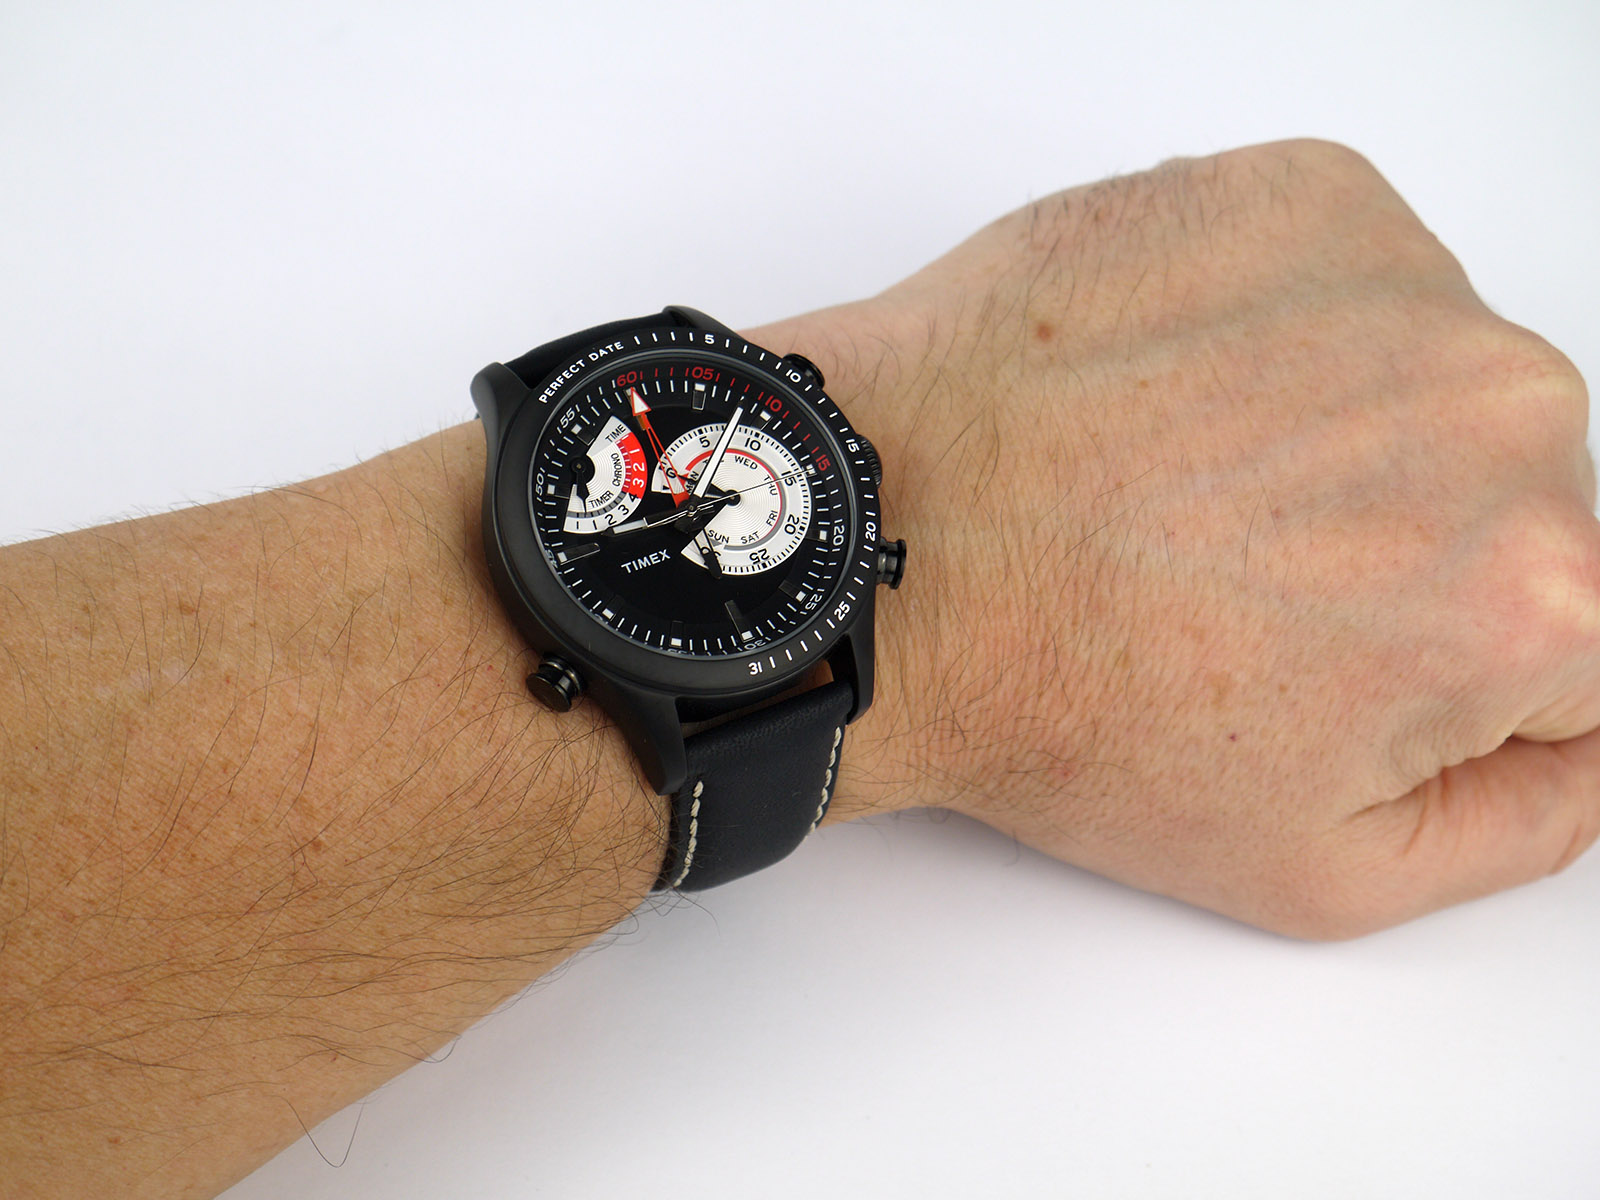 Reloj Timex TW2V05600 – WATCH OUT